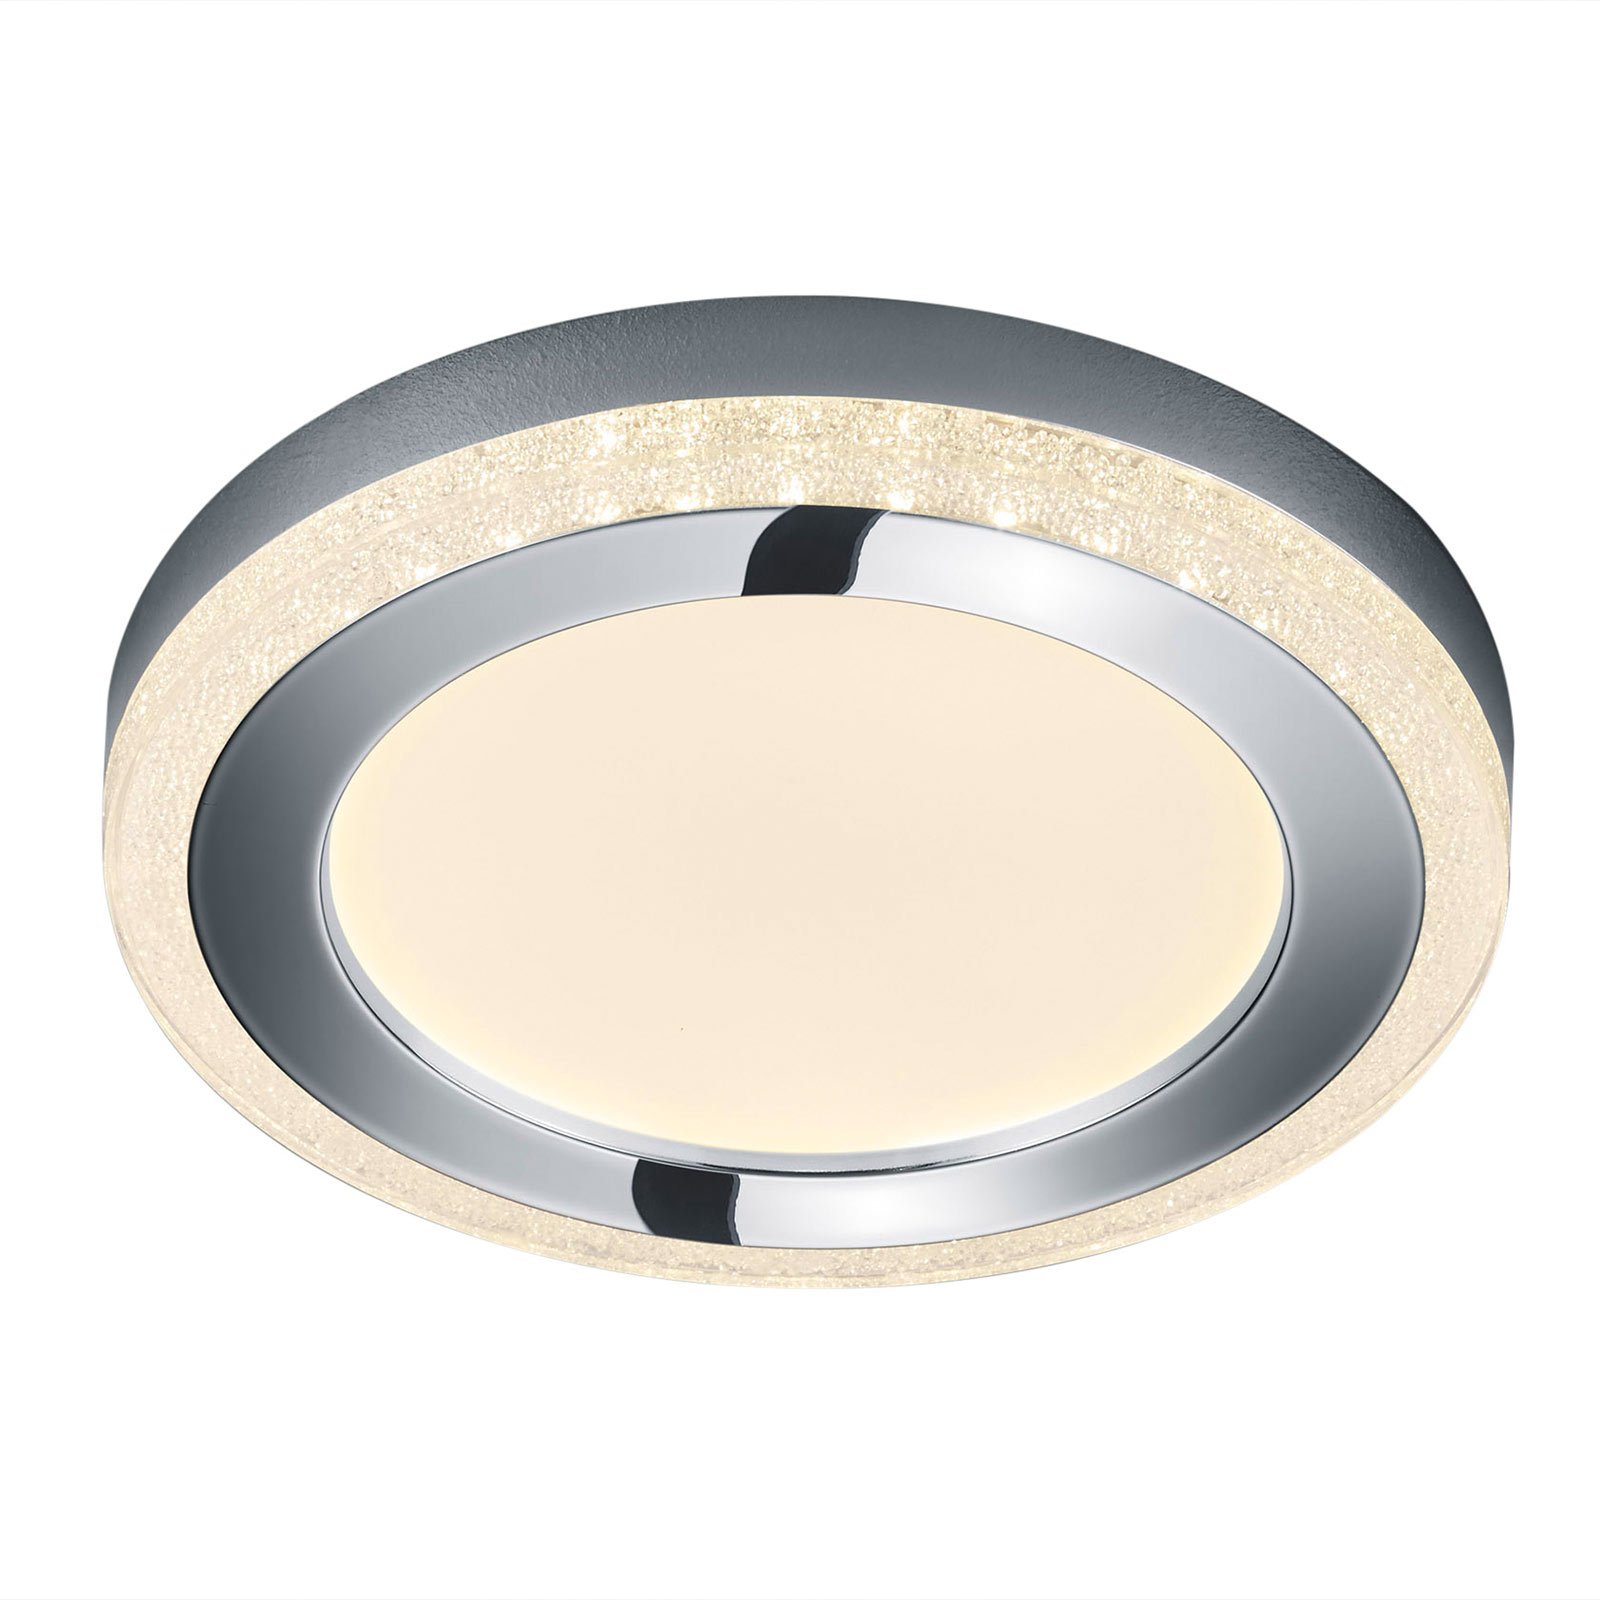 Slide LED ceiling light, white, round, Ø 40 cm